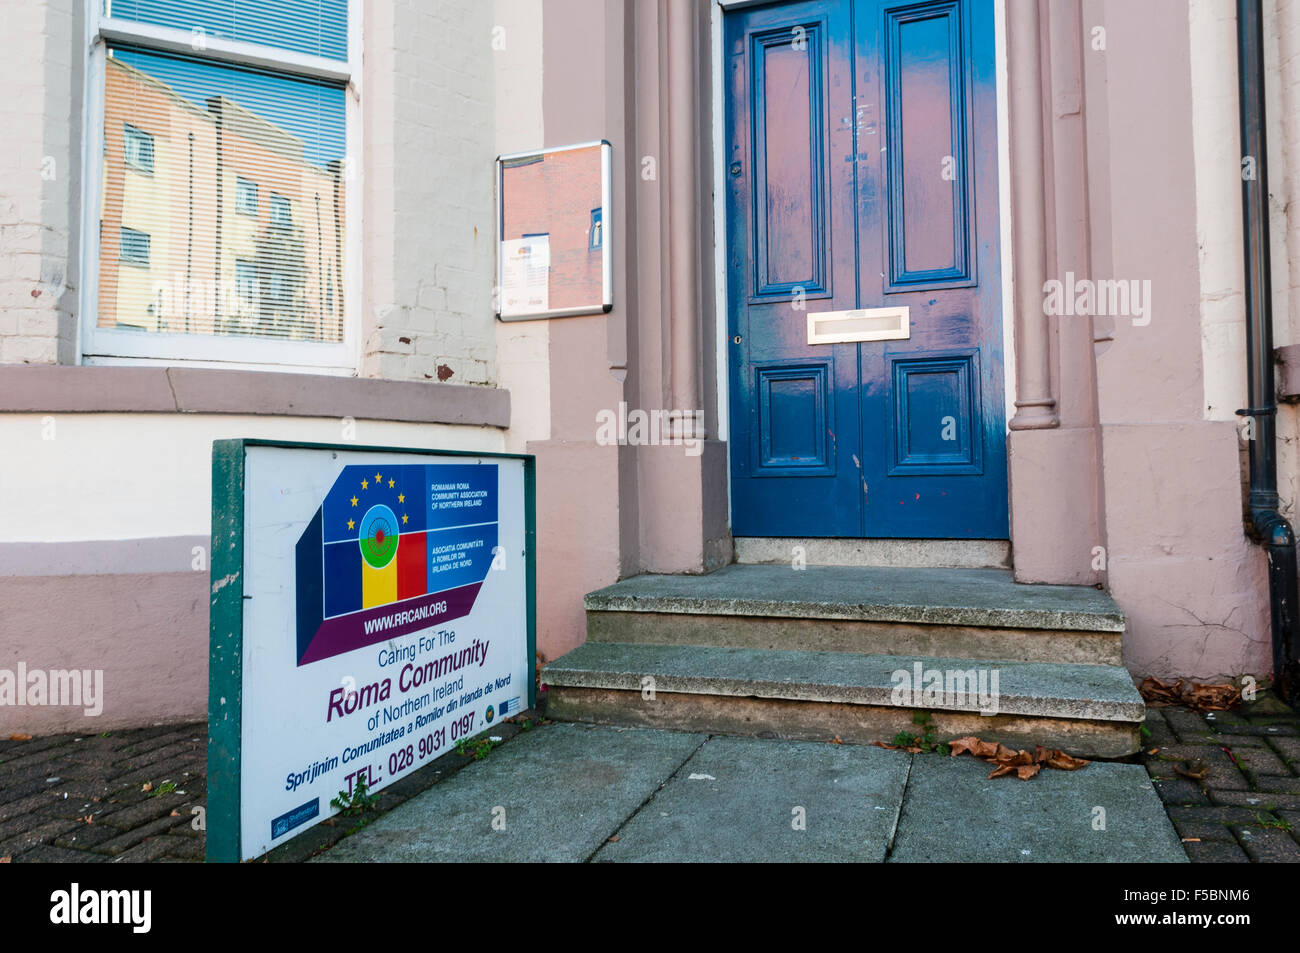 L'Association Communautaire de Roms roumains de l'Irlande du Nord. Banque D'Images